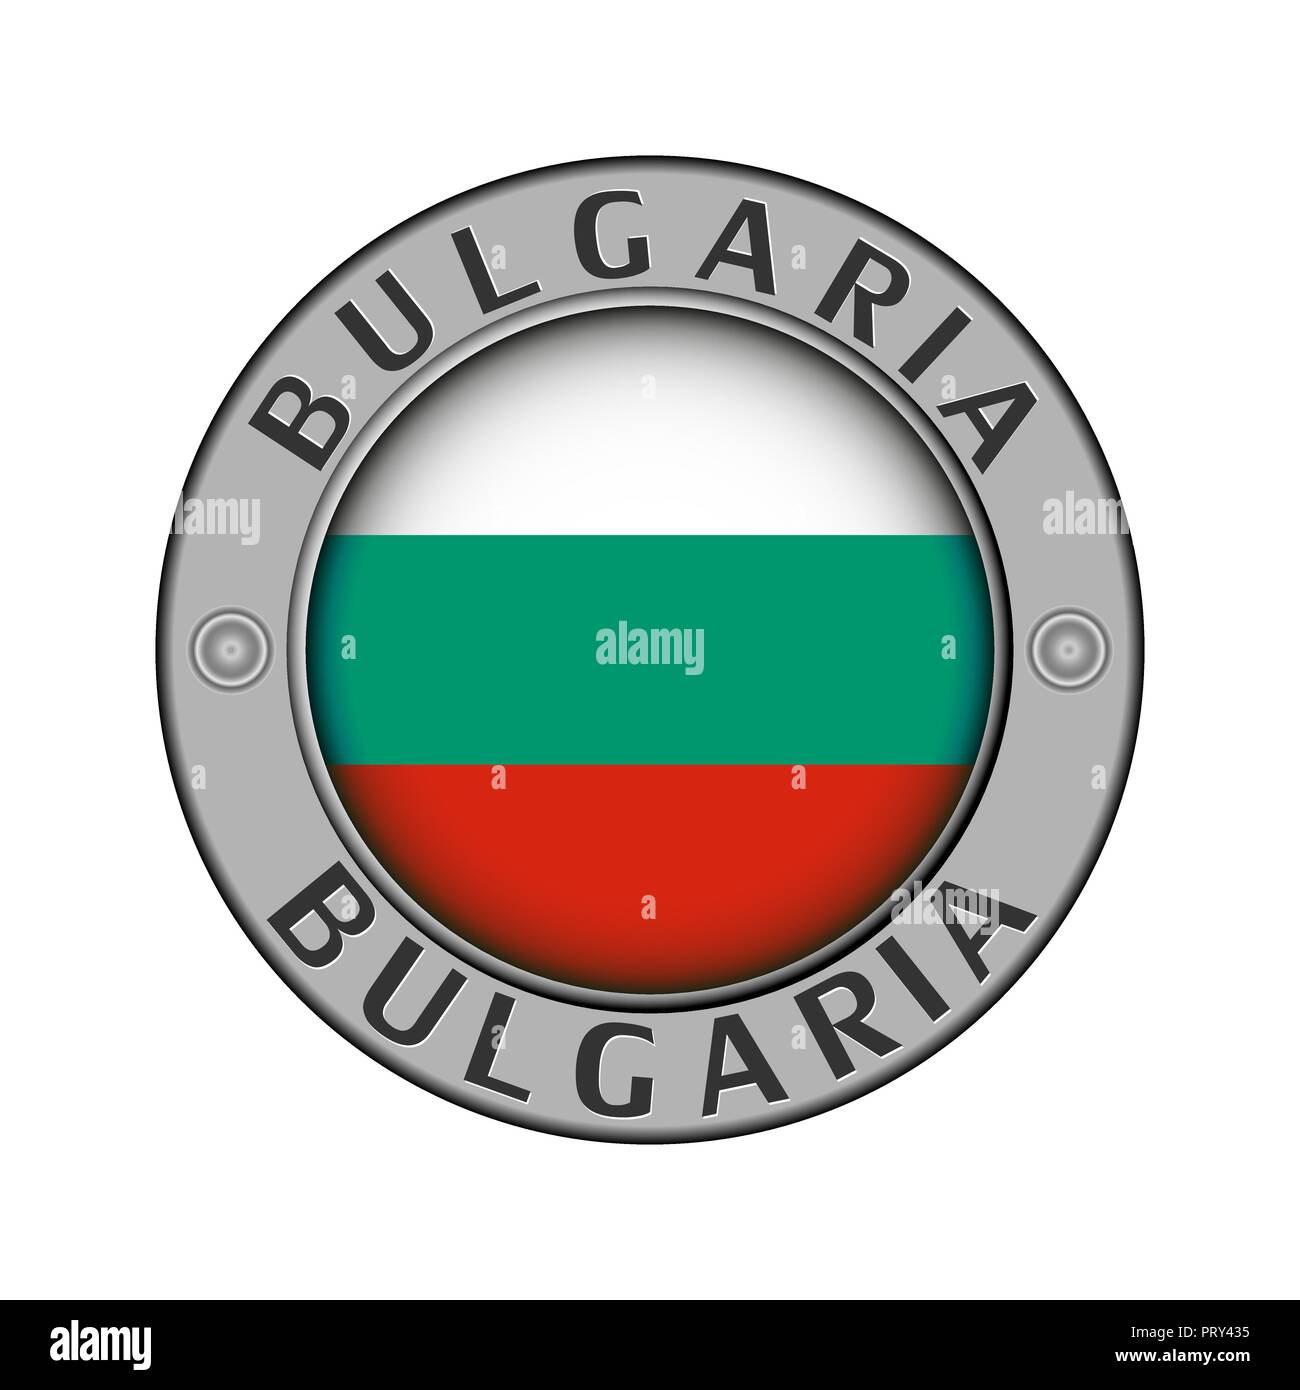 Rotondo di metallo medaglione con il nome del paese Bulgaria e un indicatore rotondo nel centro Illustrazione Vettoriale